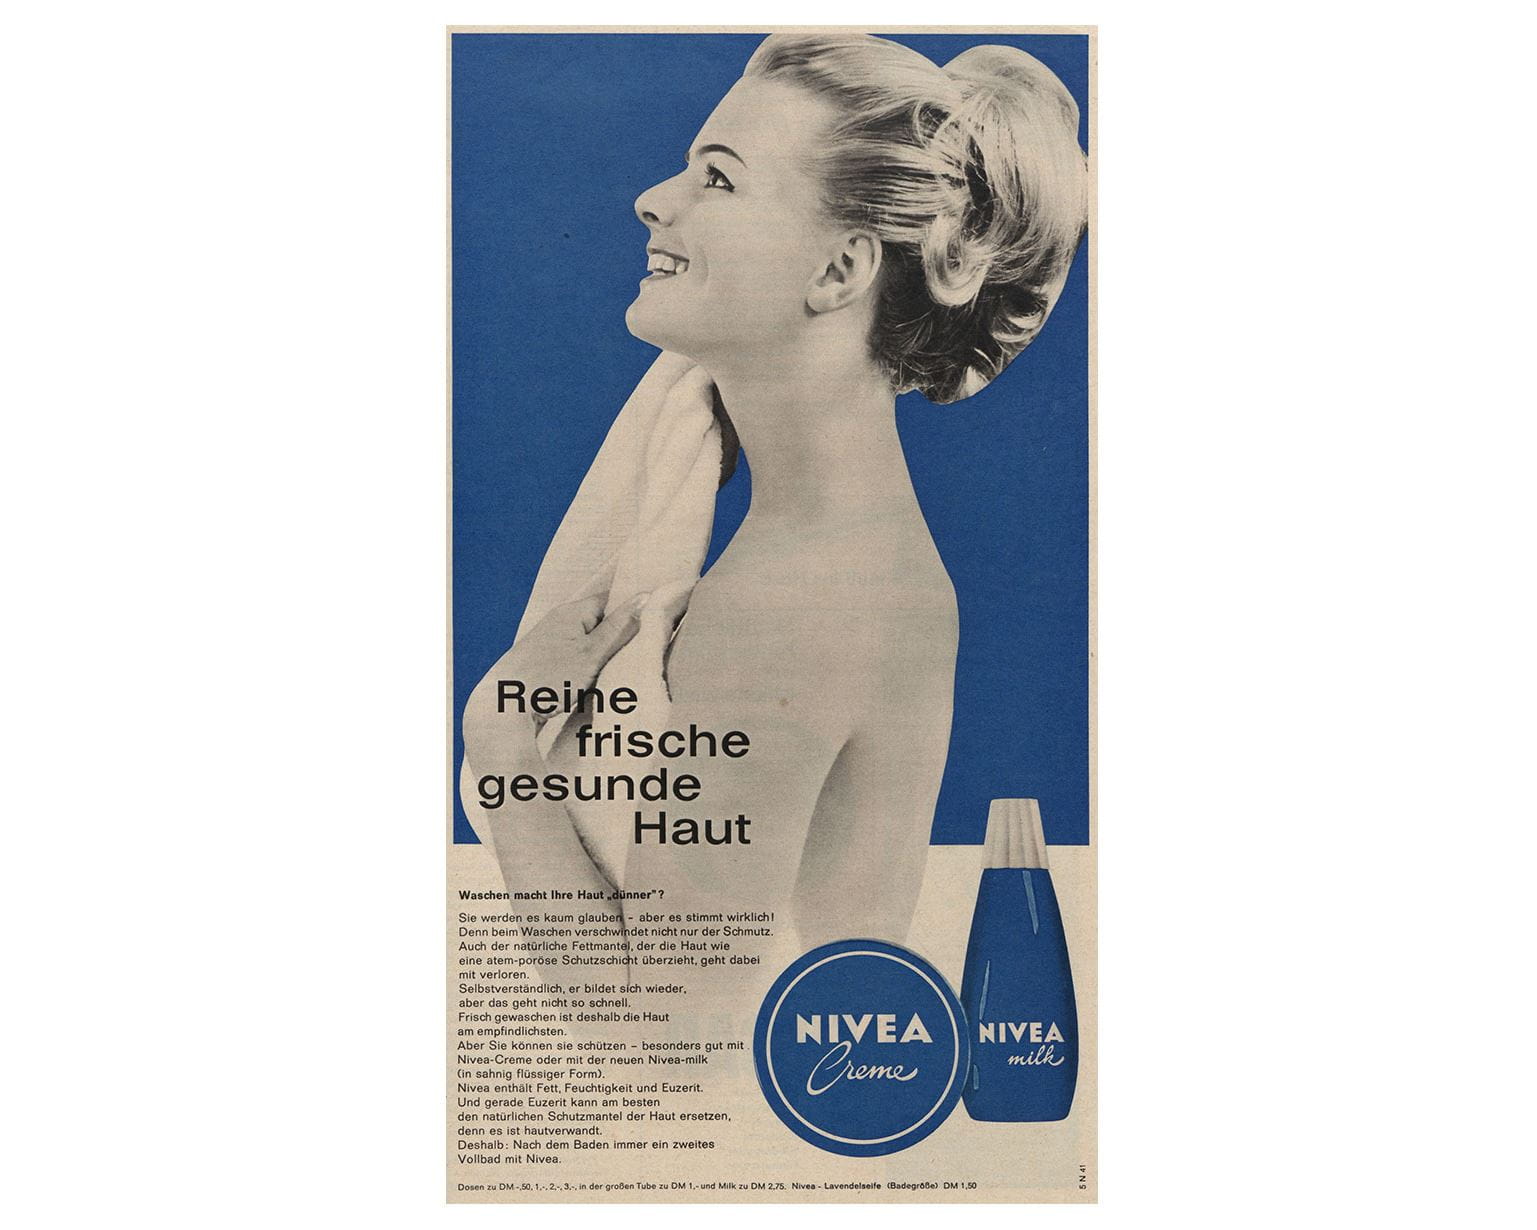 Anúncio NIVEA Creme e Milk de 1964